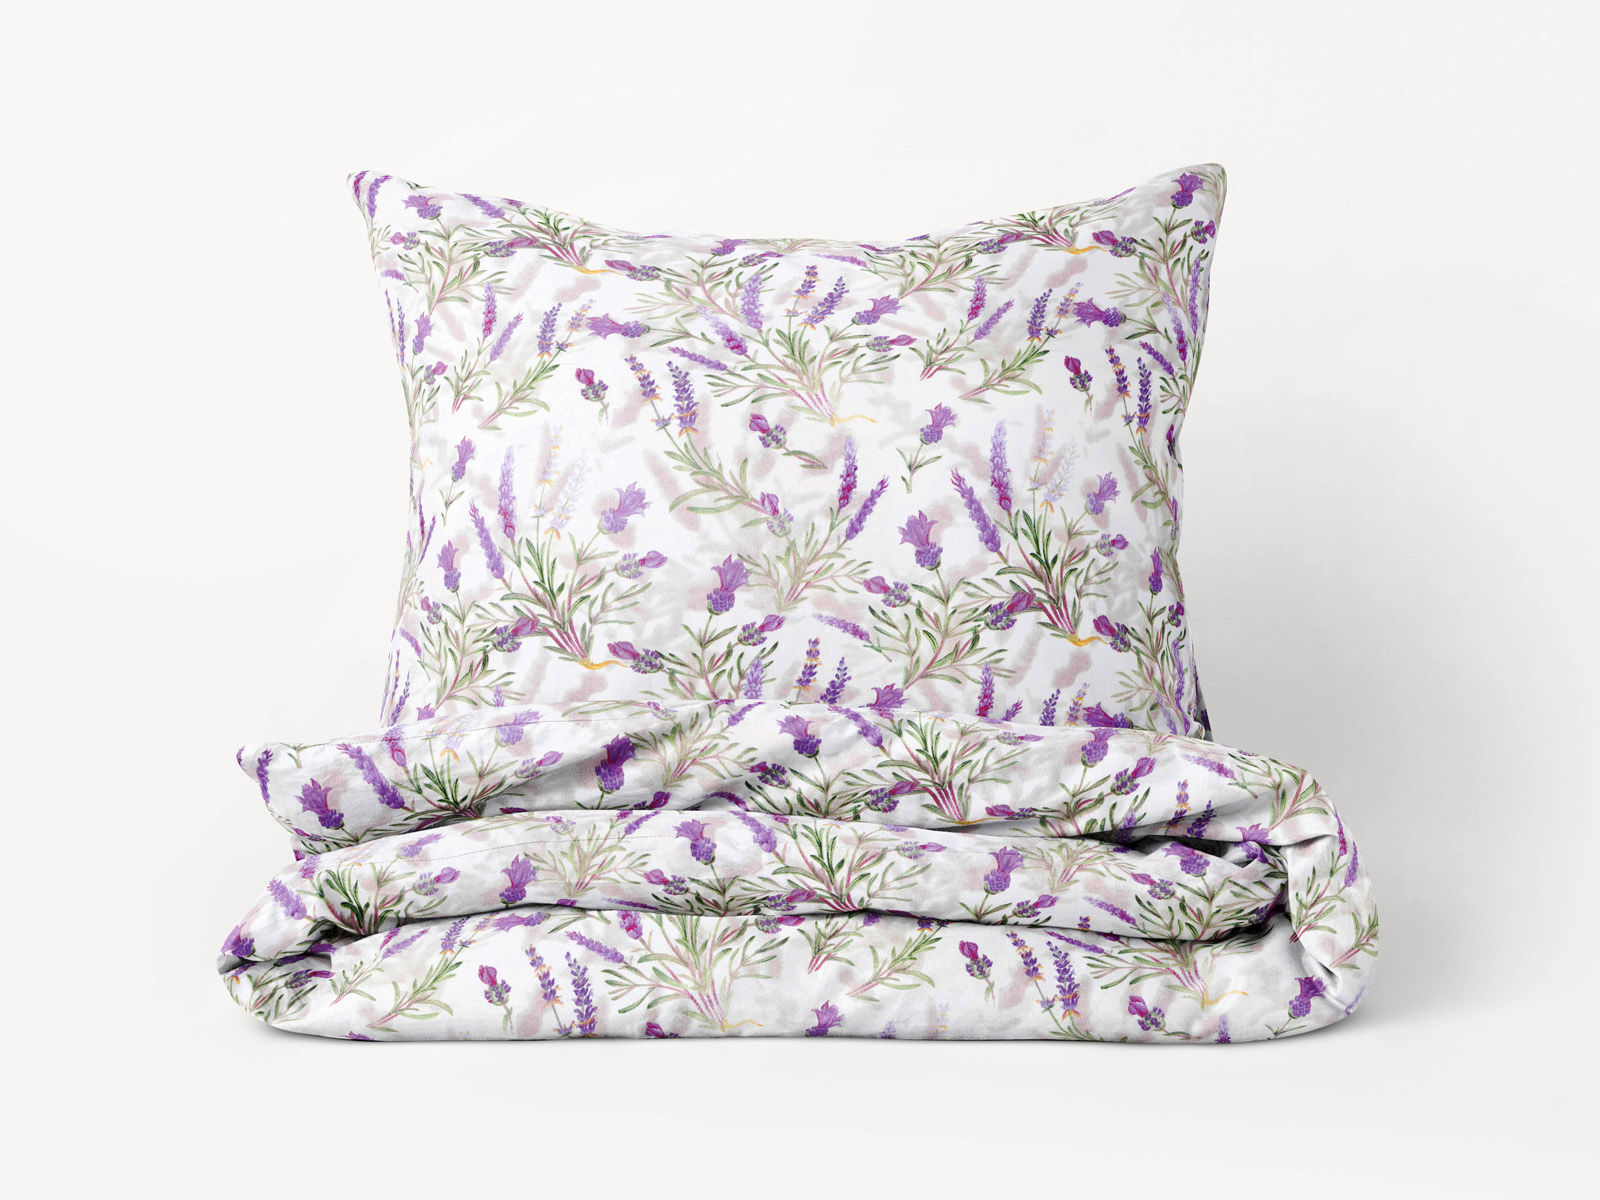 Bavlnené posteľné obliečky - levandule z Provence